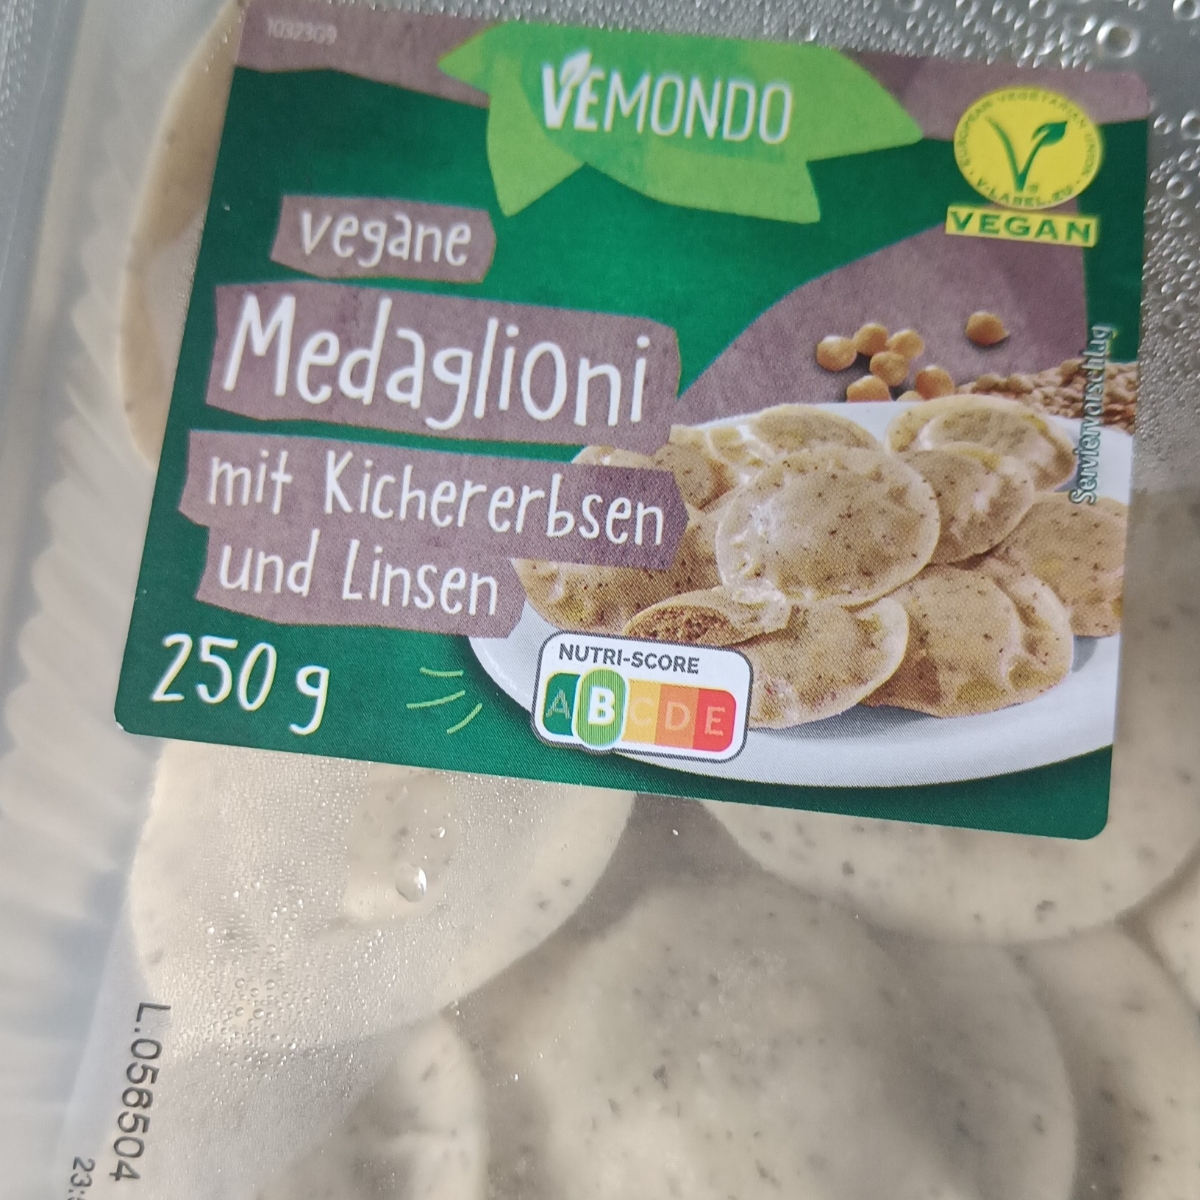 Vemondo Vegane Medaglioni Review Kichererbsen | mit und Linsen abillion